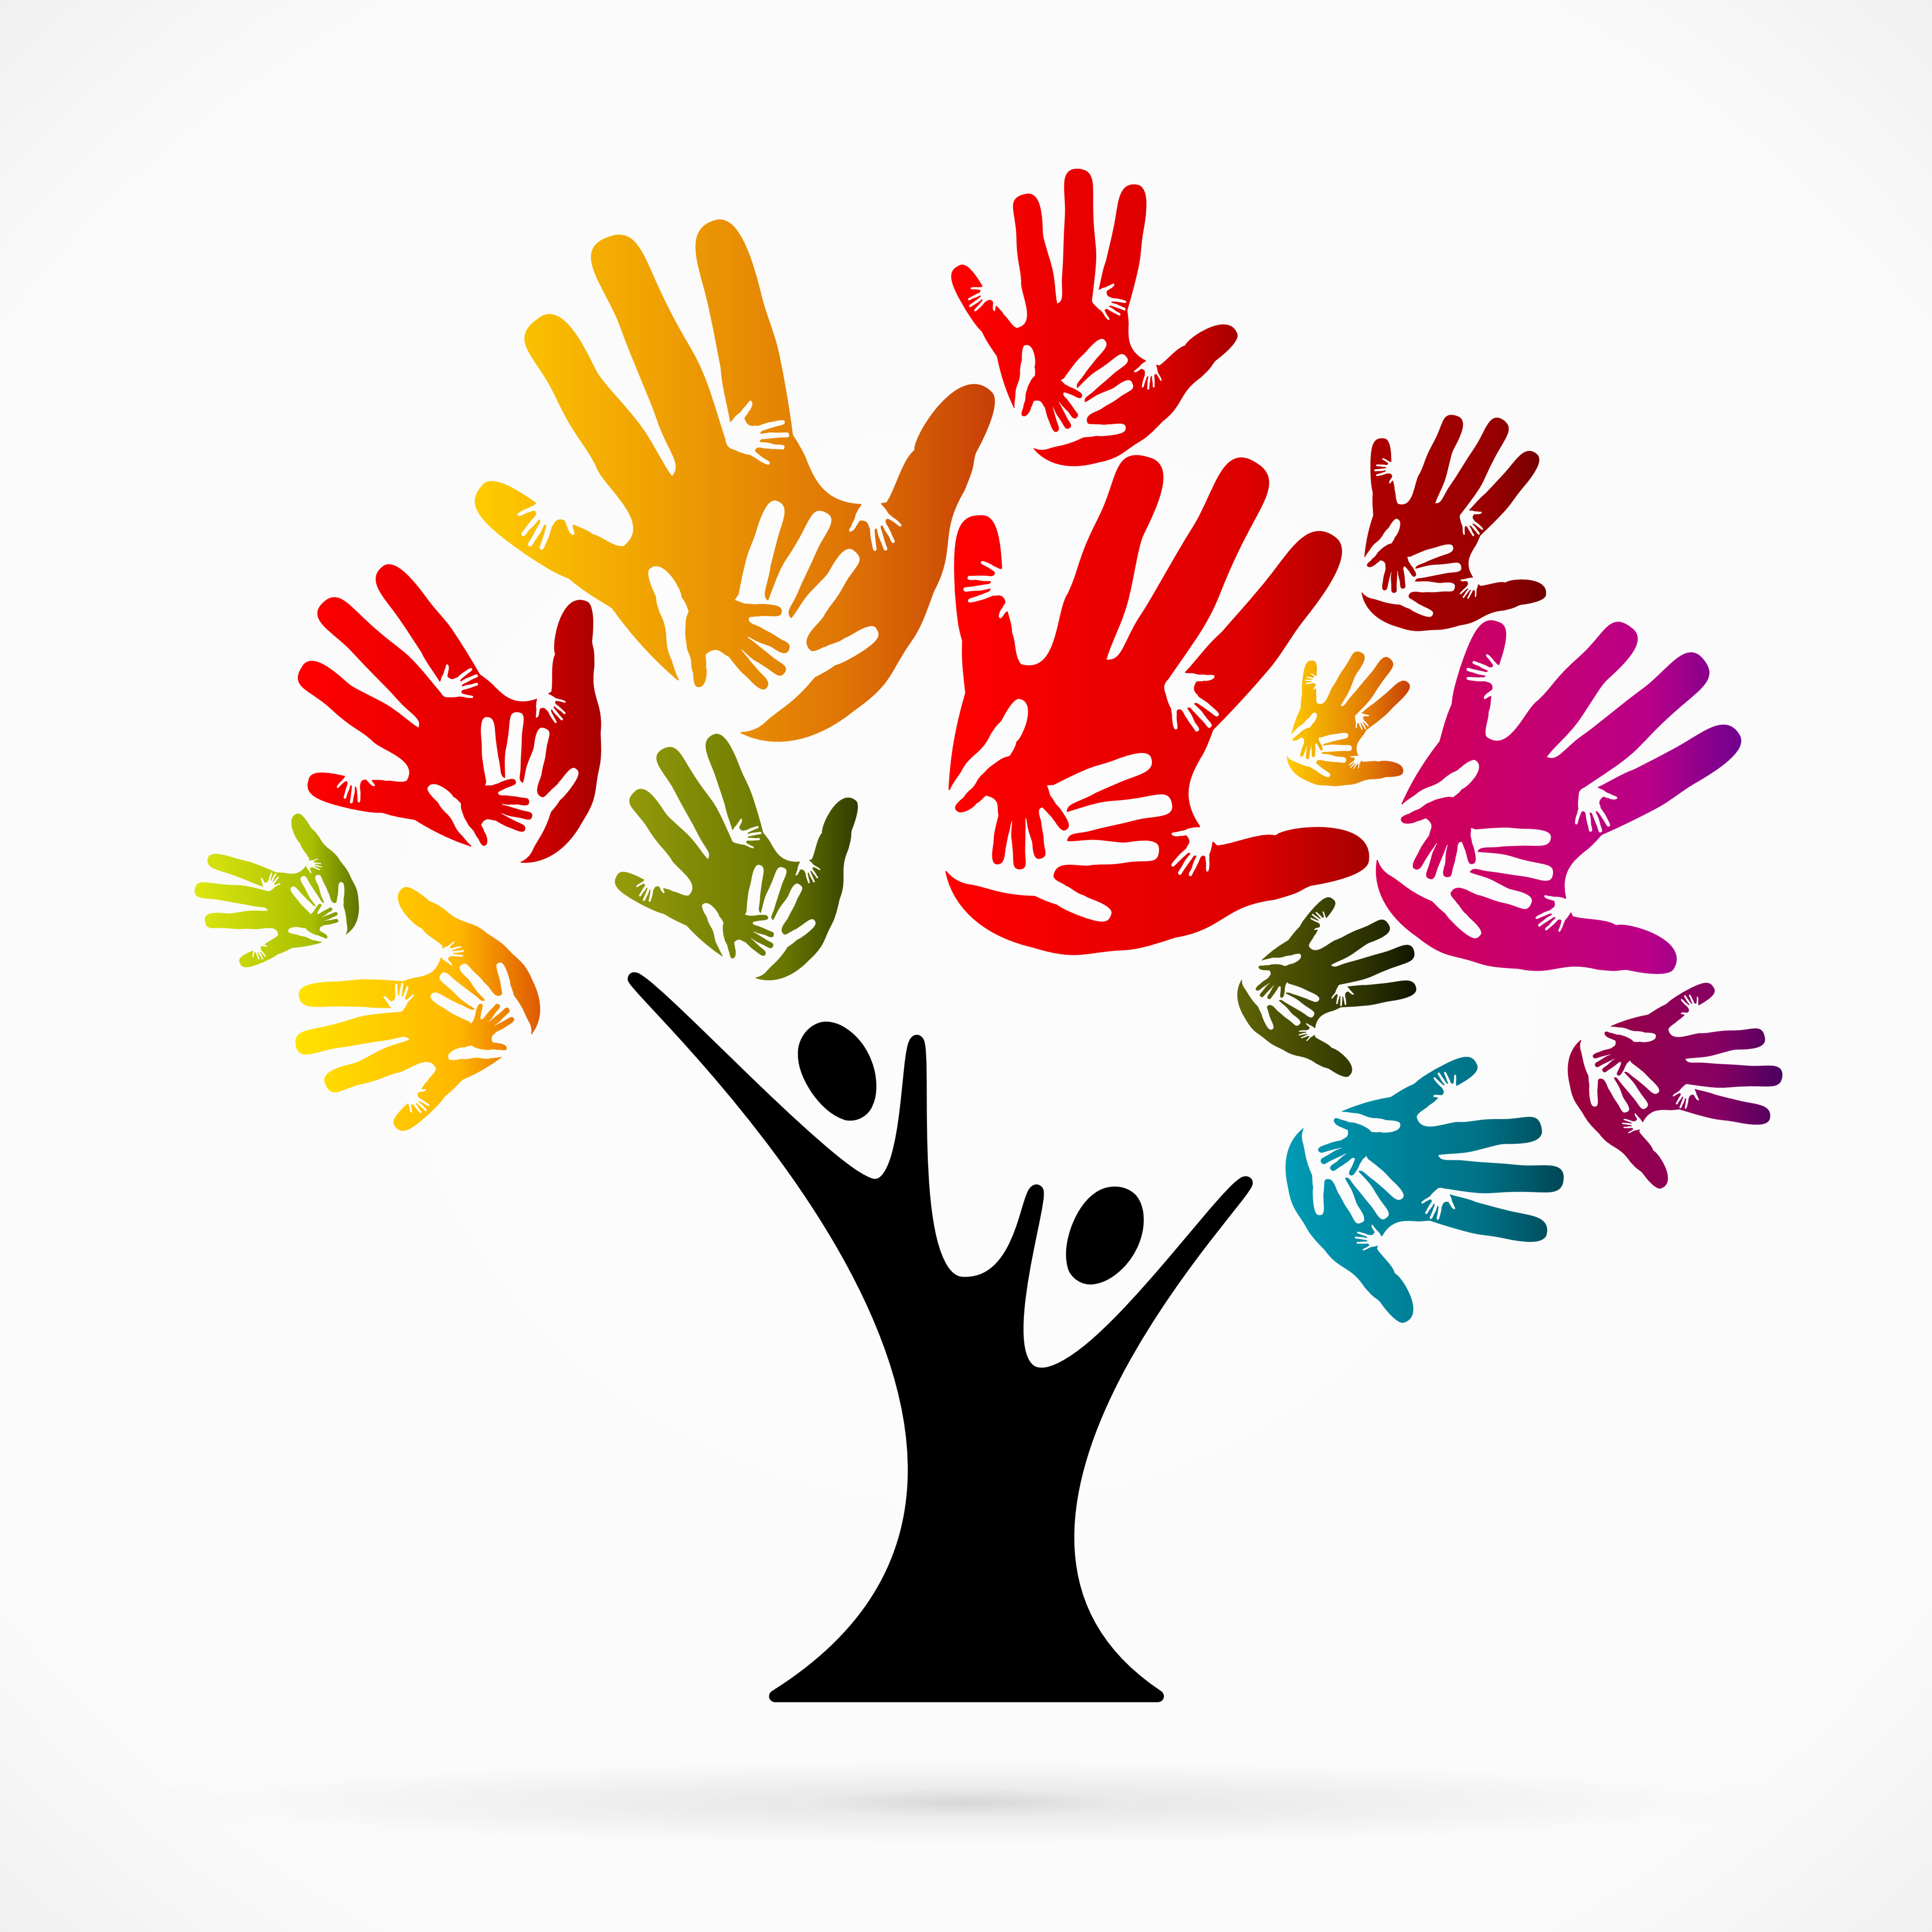 Шаблоны рук семьи. Дерево с ладошками. Символ толерантности. Цветные руки. Символ волонтеров.